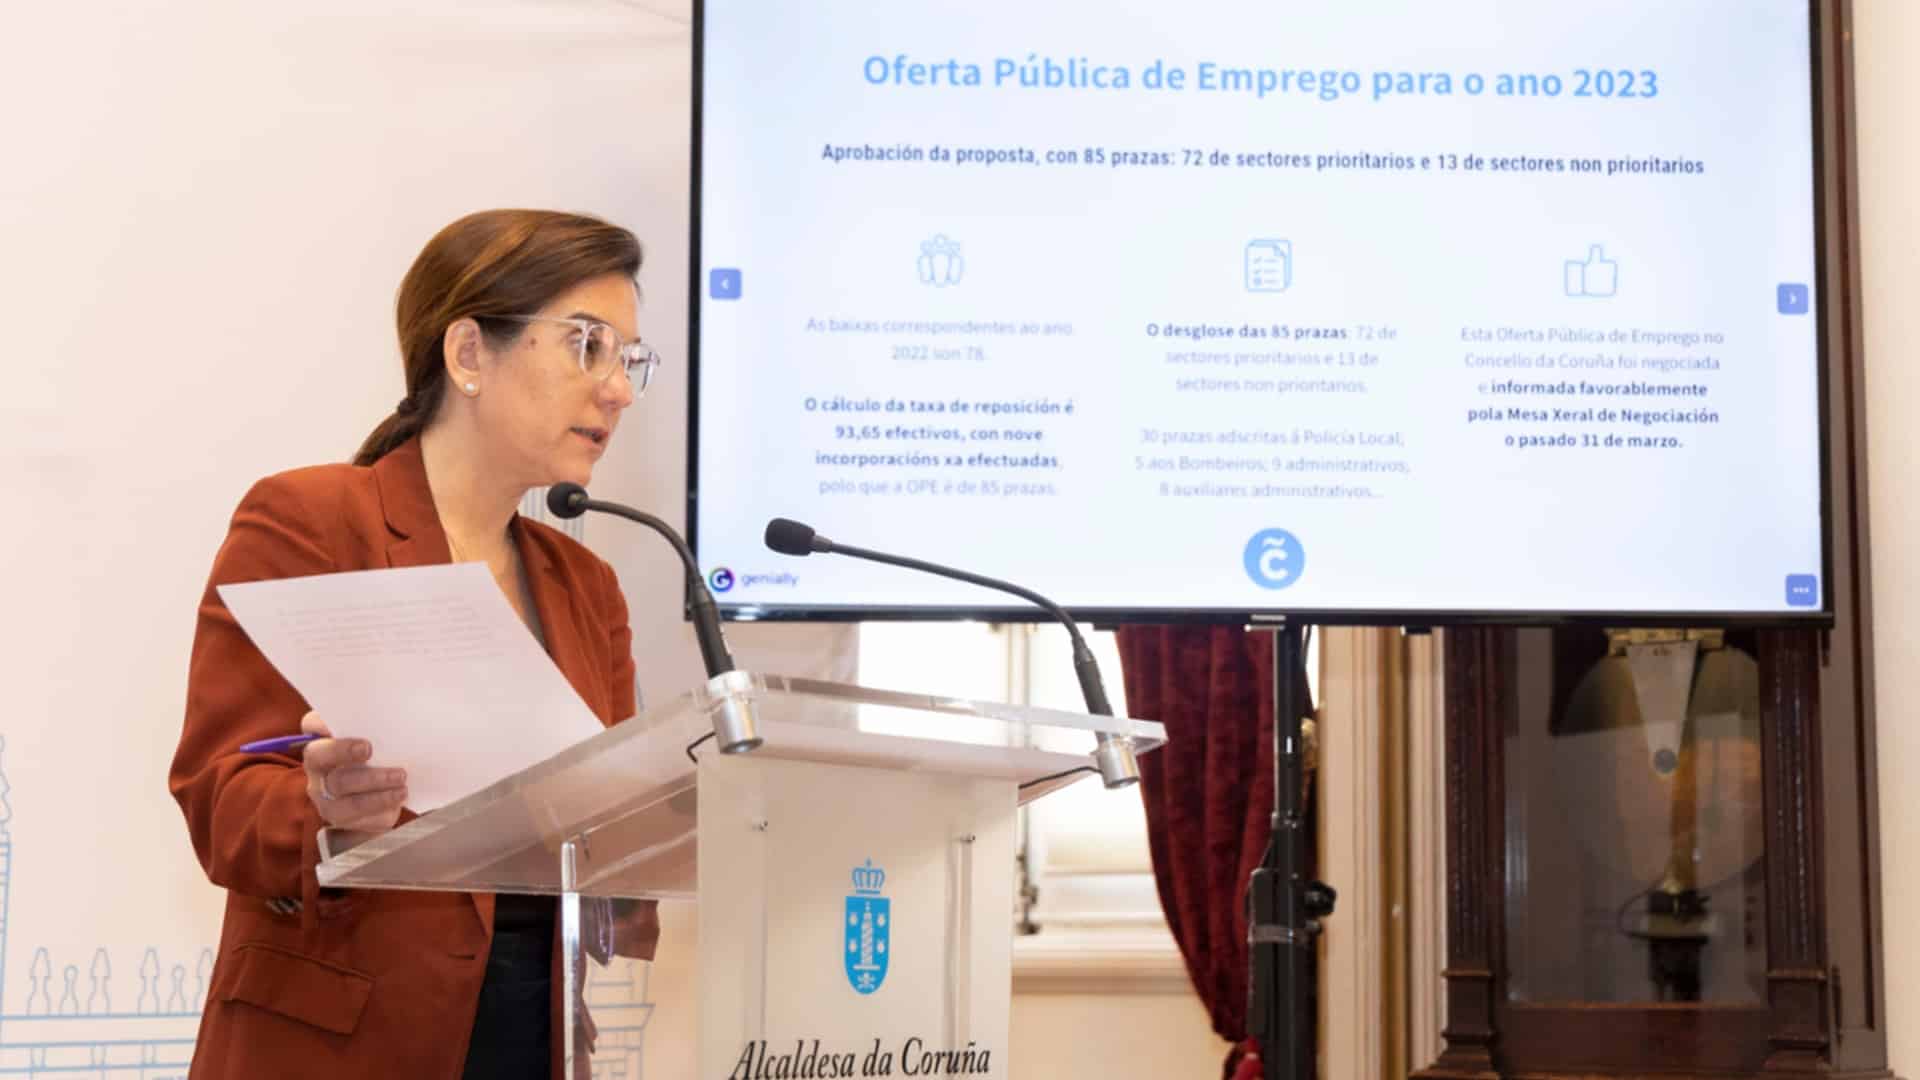 La alcaldesa de A Coruña, Inés Rey, presentado la Oferta Pública de Emprego 2023 | CONCELLO DA CORUÑA